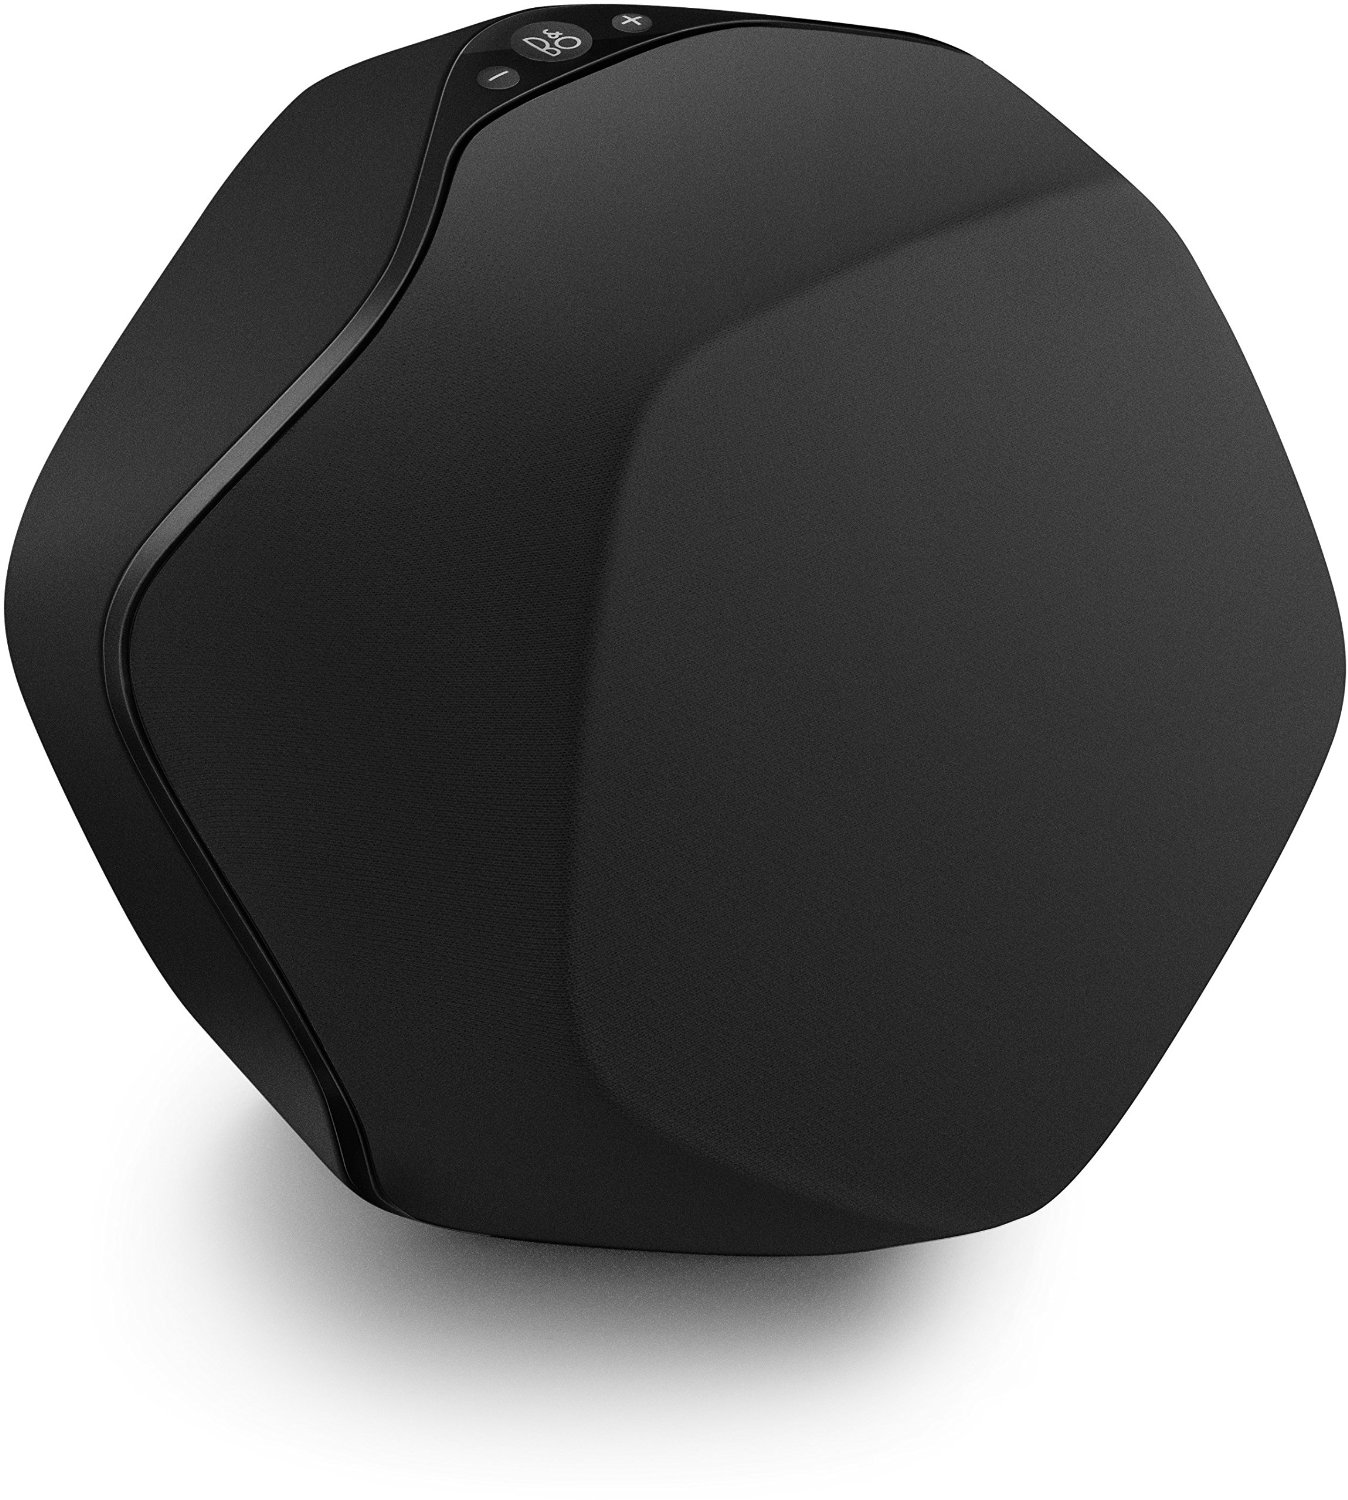 Bild zu Bluetooth-Lautsprecher Bang & Olufsen Beoplay S3 für 129,95€